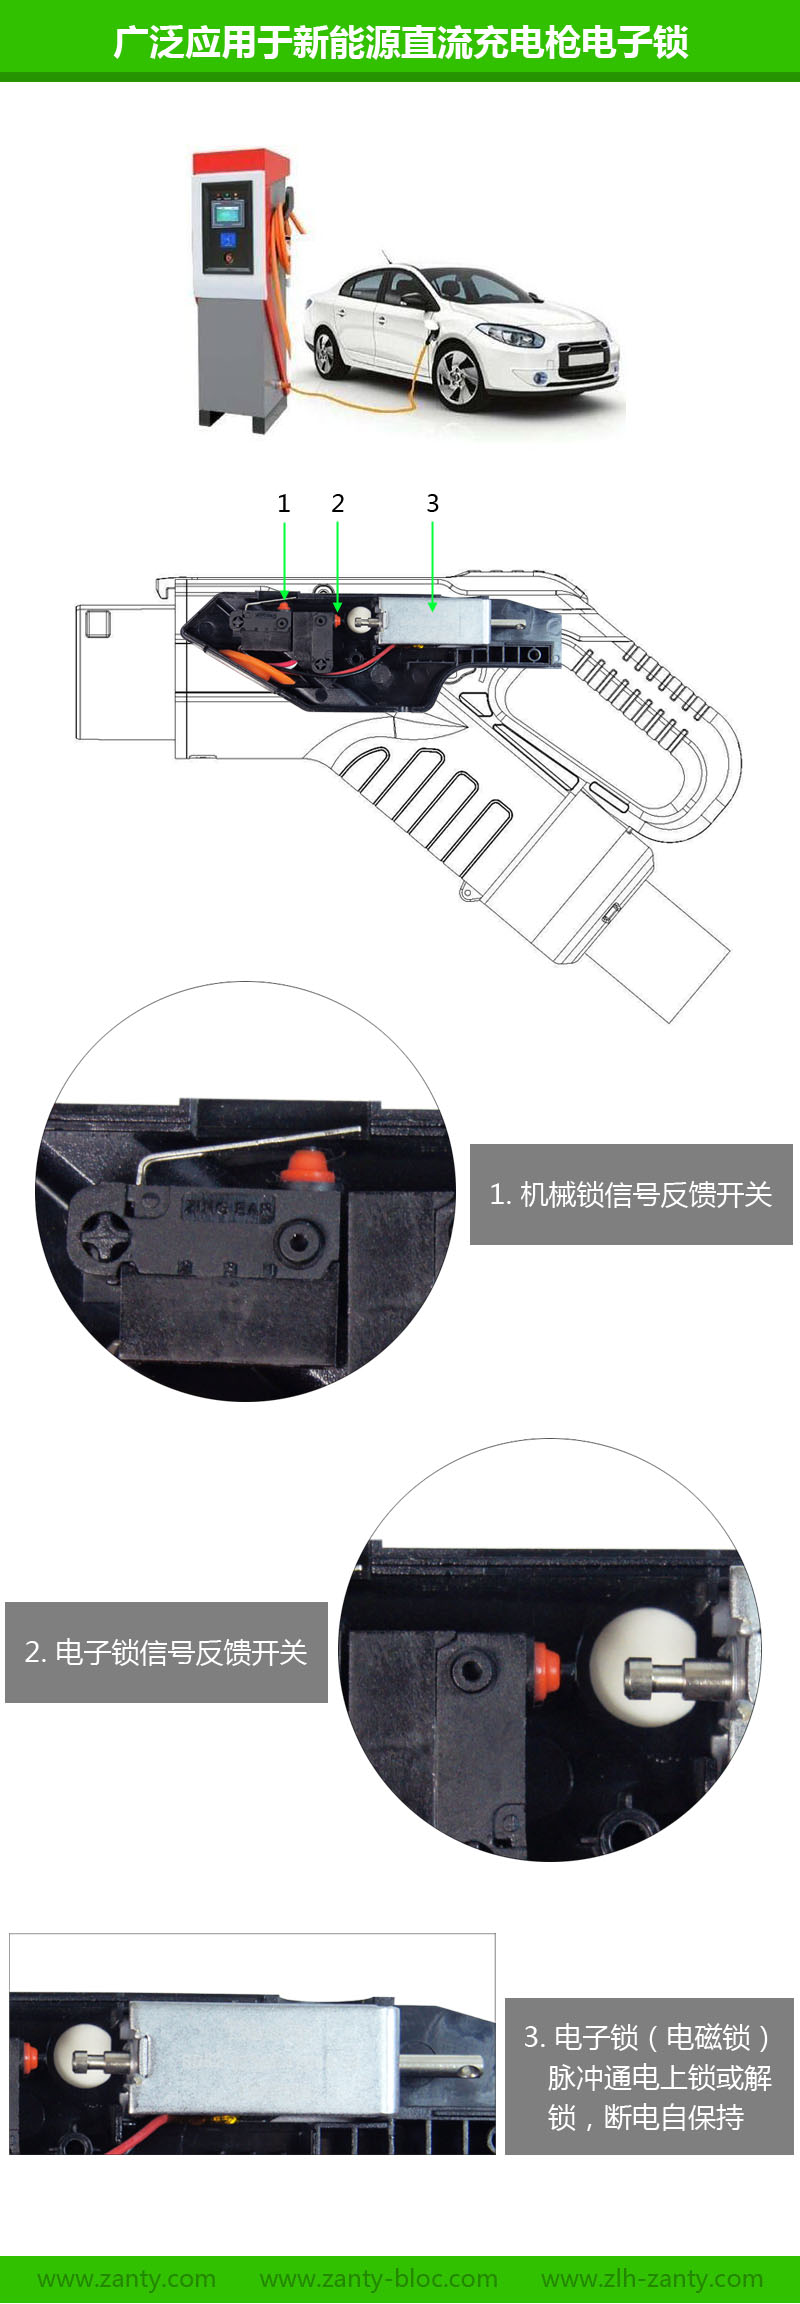 SDK2-0734S雙保持電磁鐵 直流充電槍電子鎖 小型節能電磁鎖